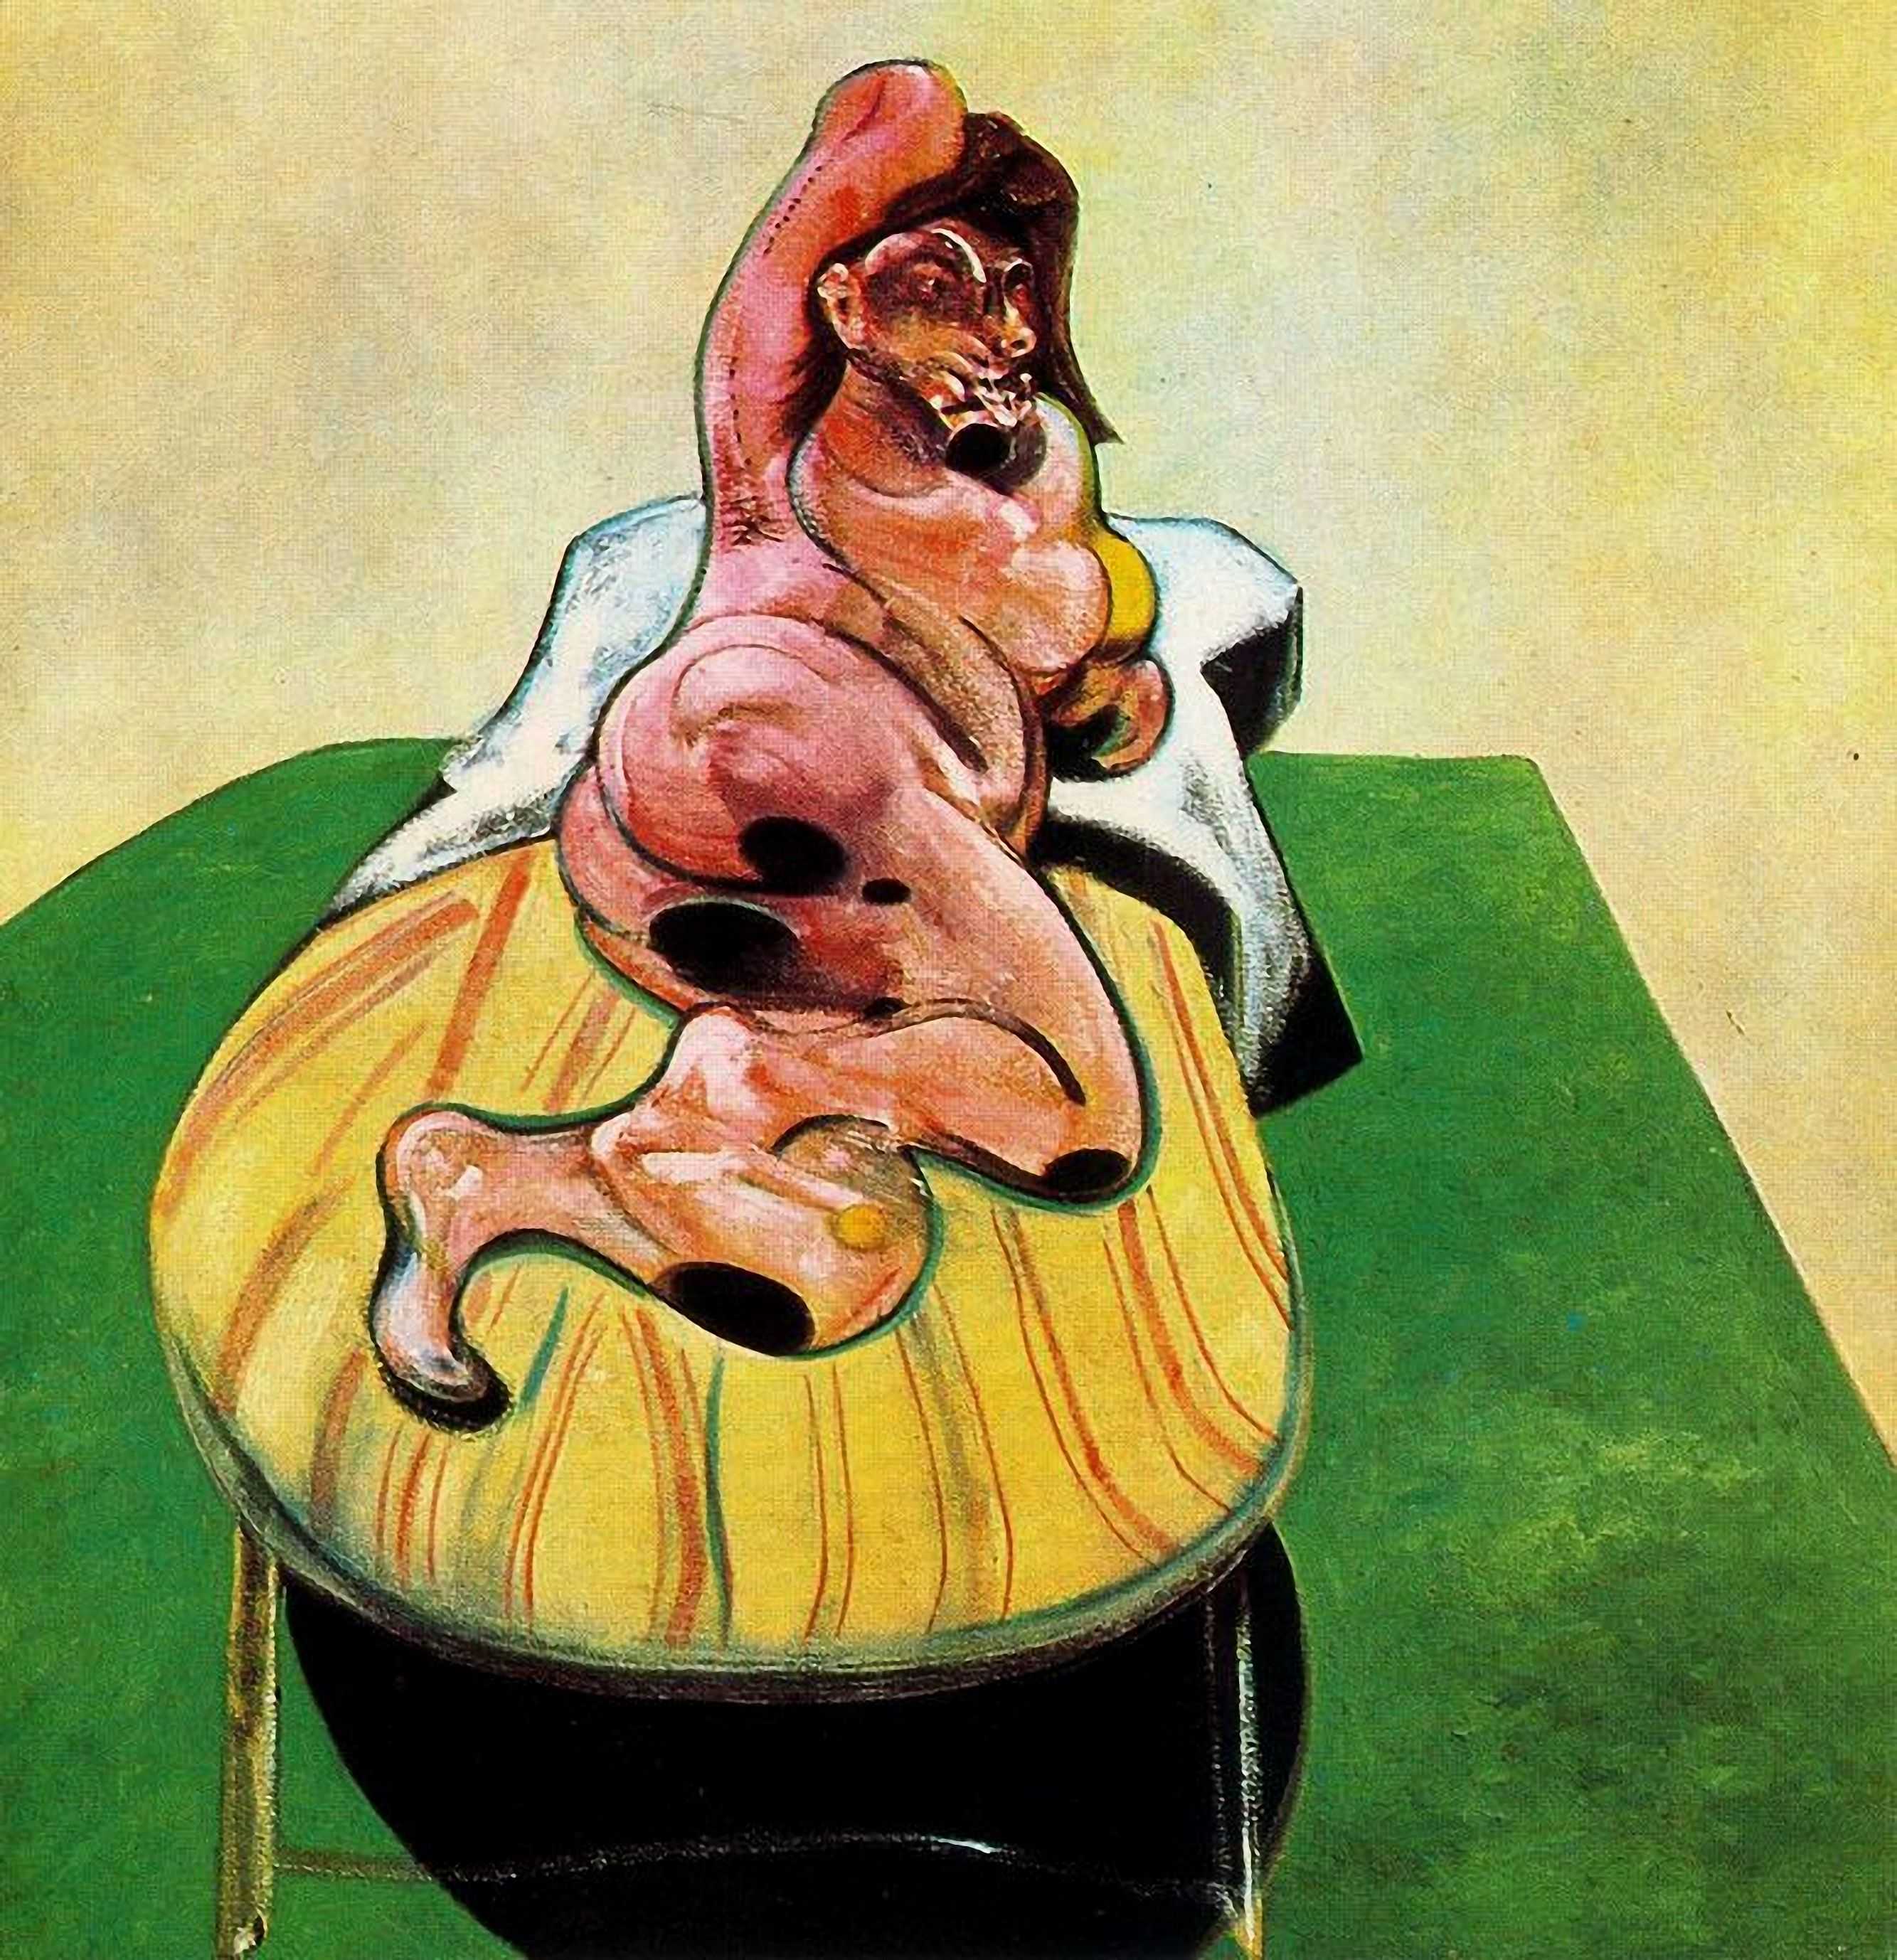 Знаменитая картина Фигура с мясом французского художника Фрэнсиса Бэкона - сильное и возмущающее произведение искусства, которое дает возможность зрителю взглянуть на реальность с нестандартной точки зрения.